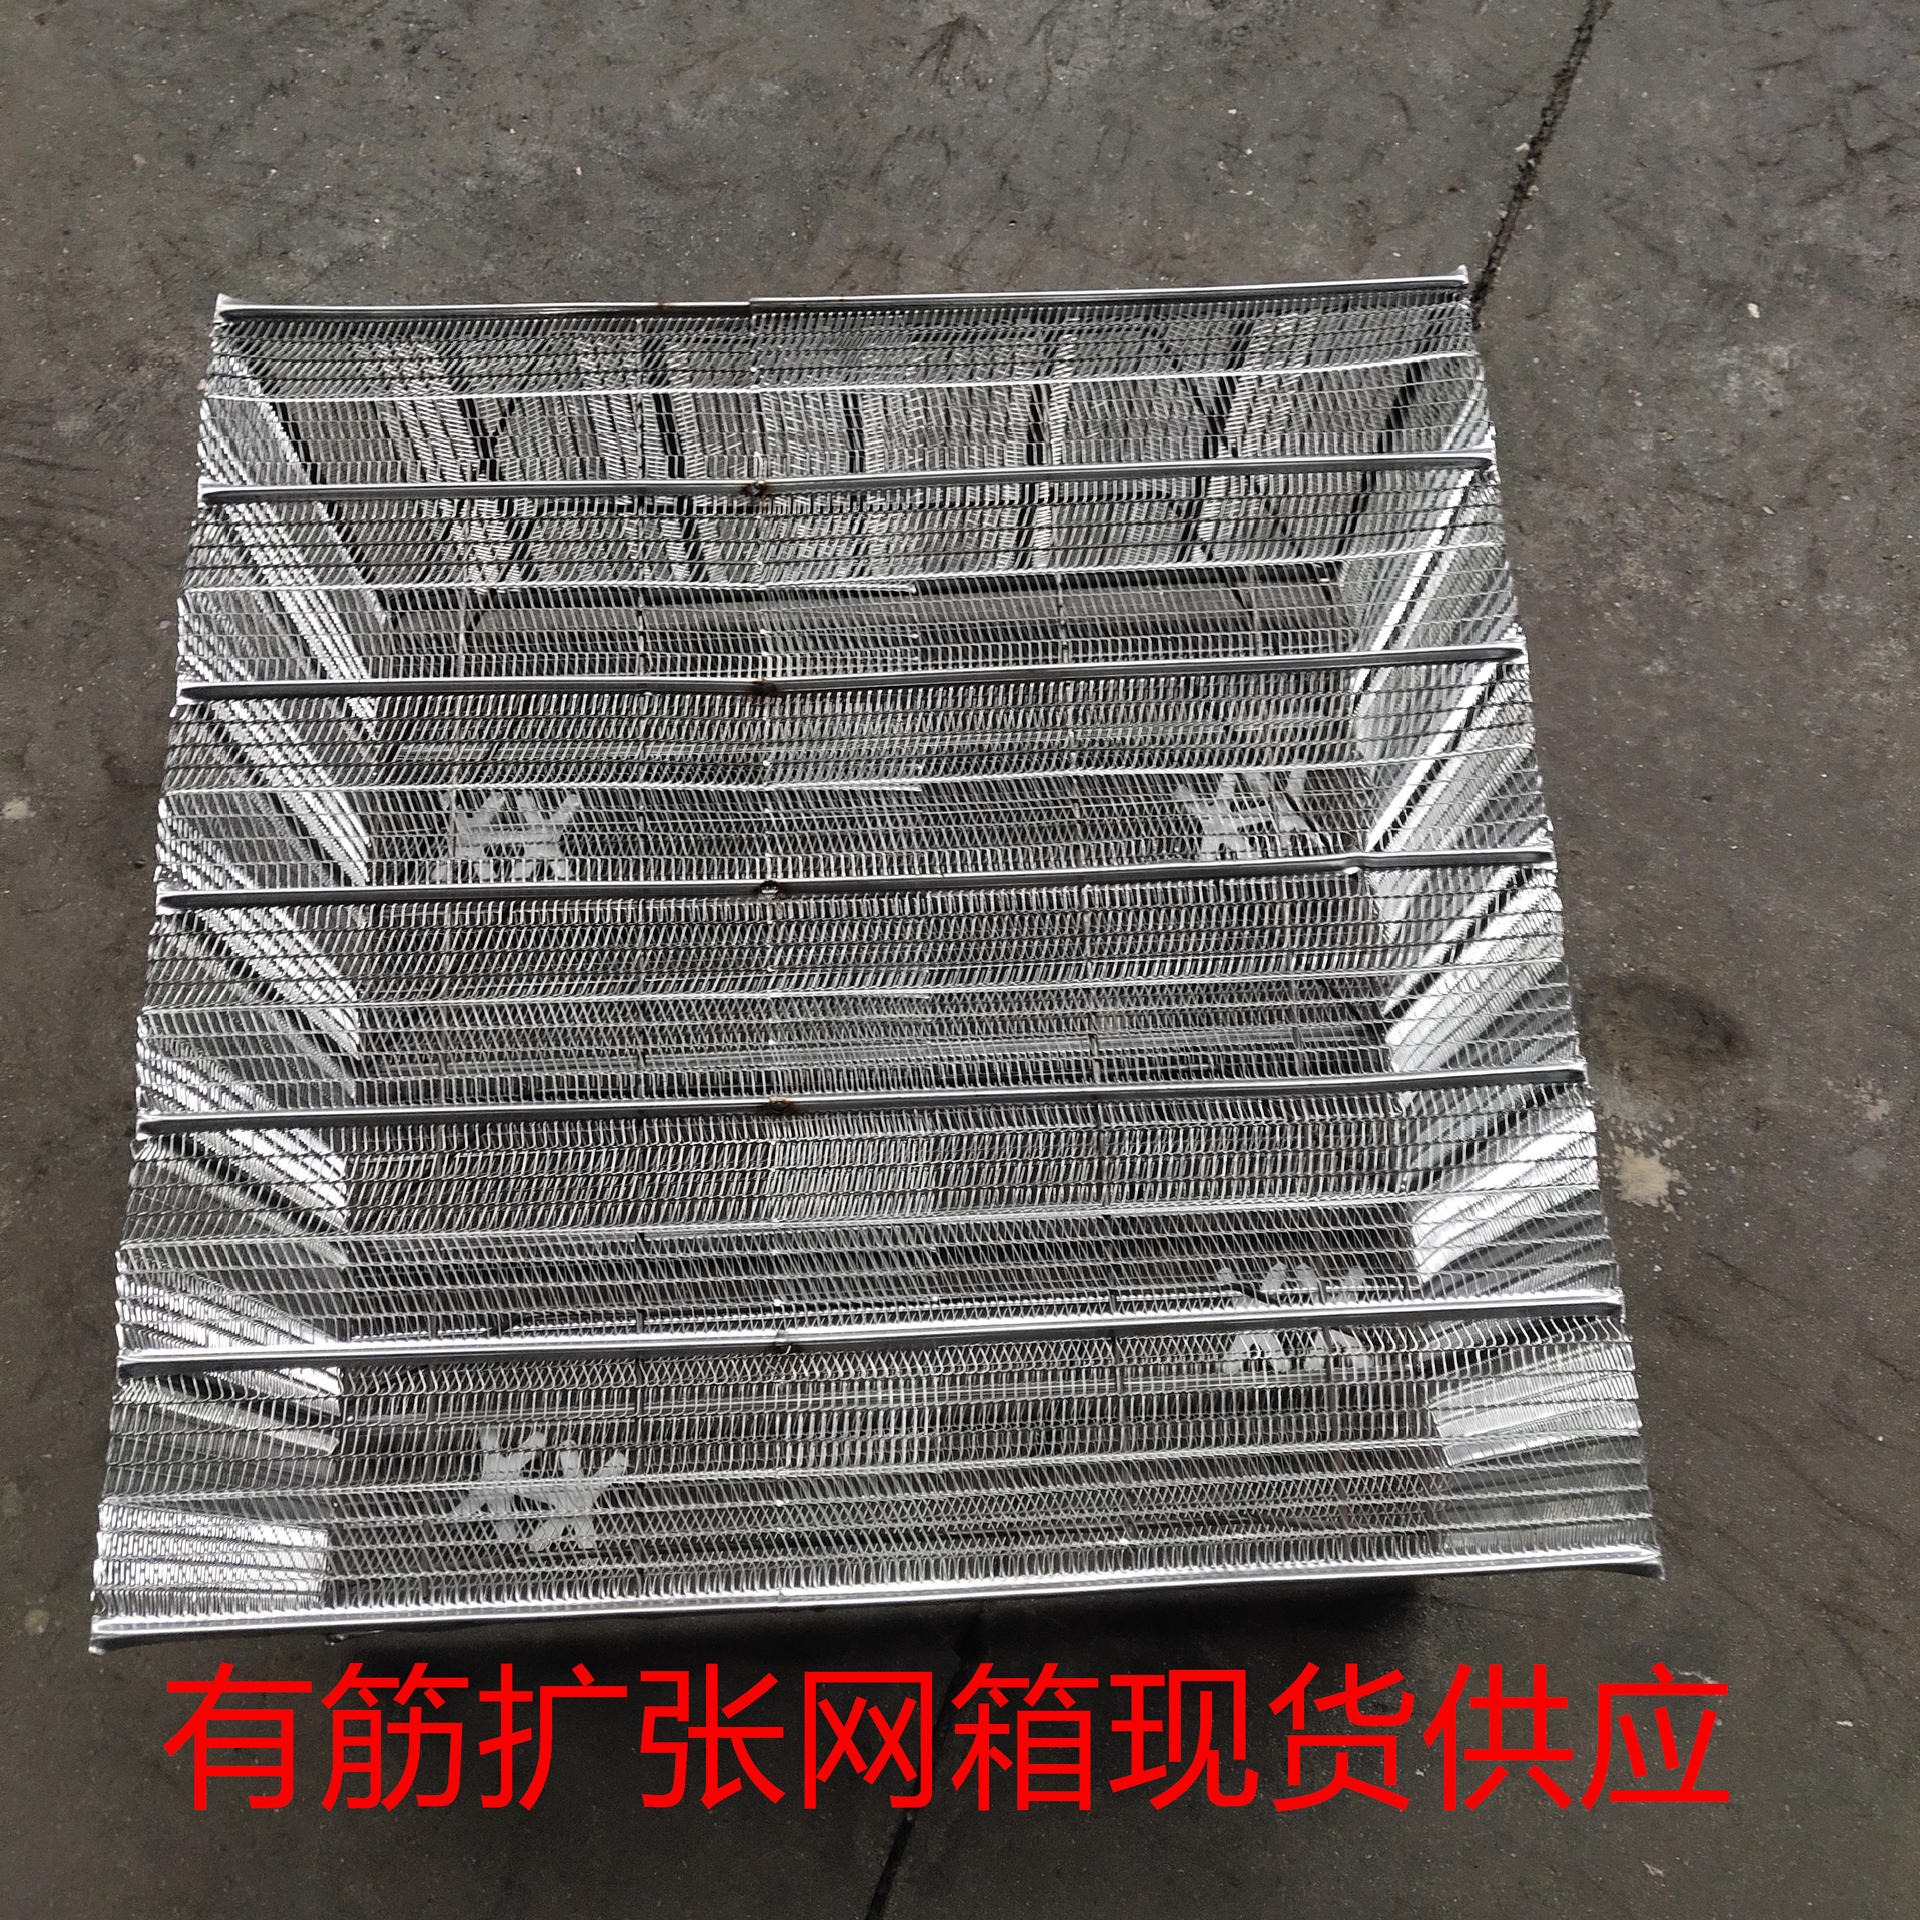 恩兴 钢网箱 安平生产BDF钢网箱 空心楼盖芯膜膜壳 实体厂家 免费拿样品